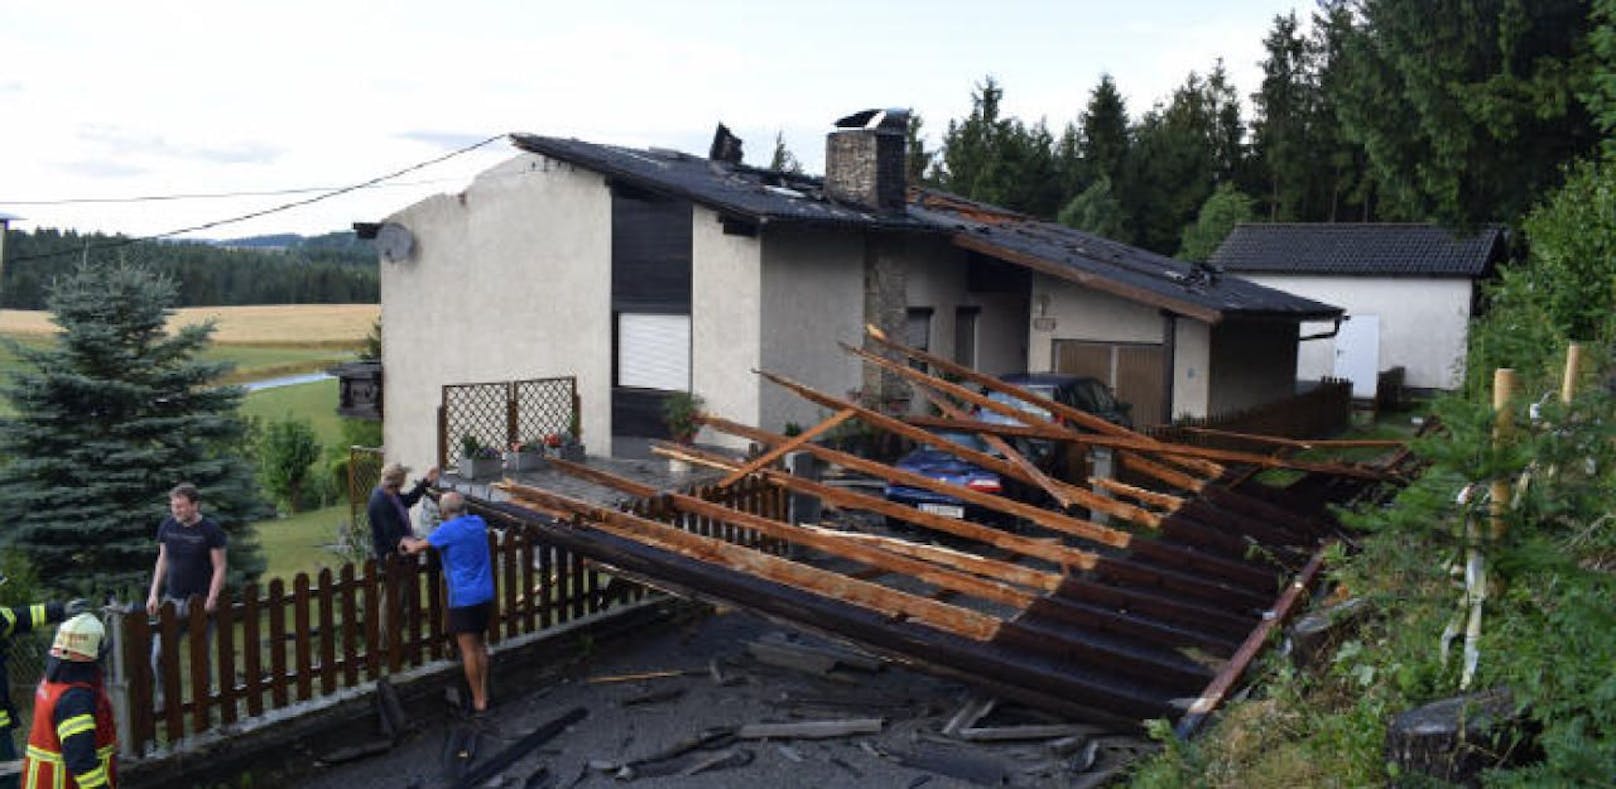 5-Minuten-Sturm riss bei Haus halbes Dach weg